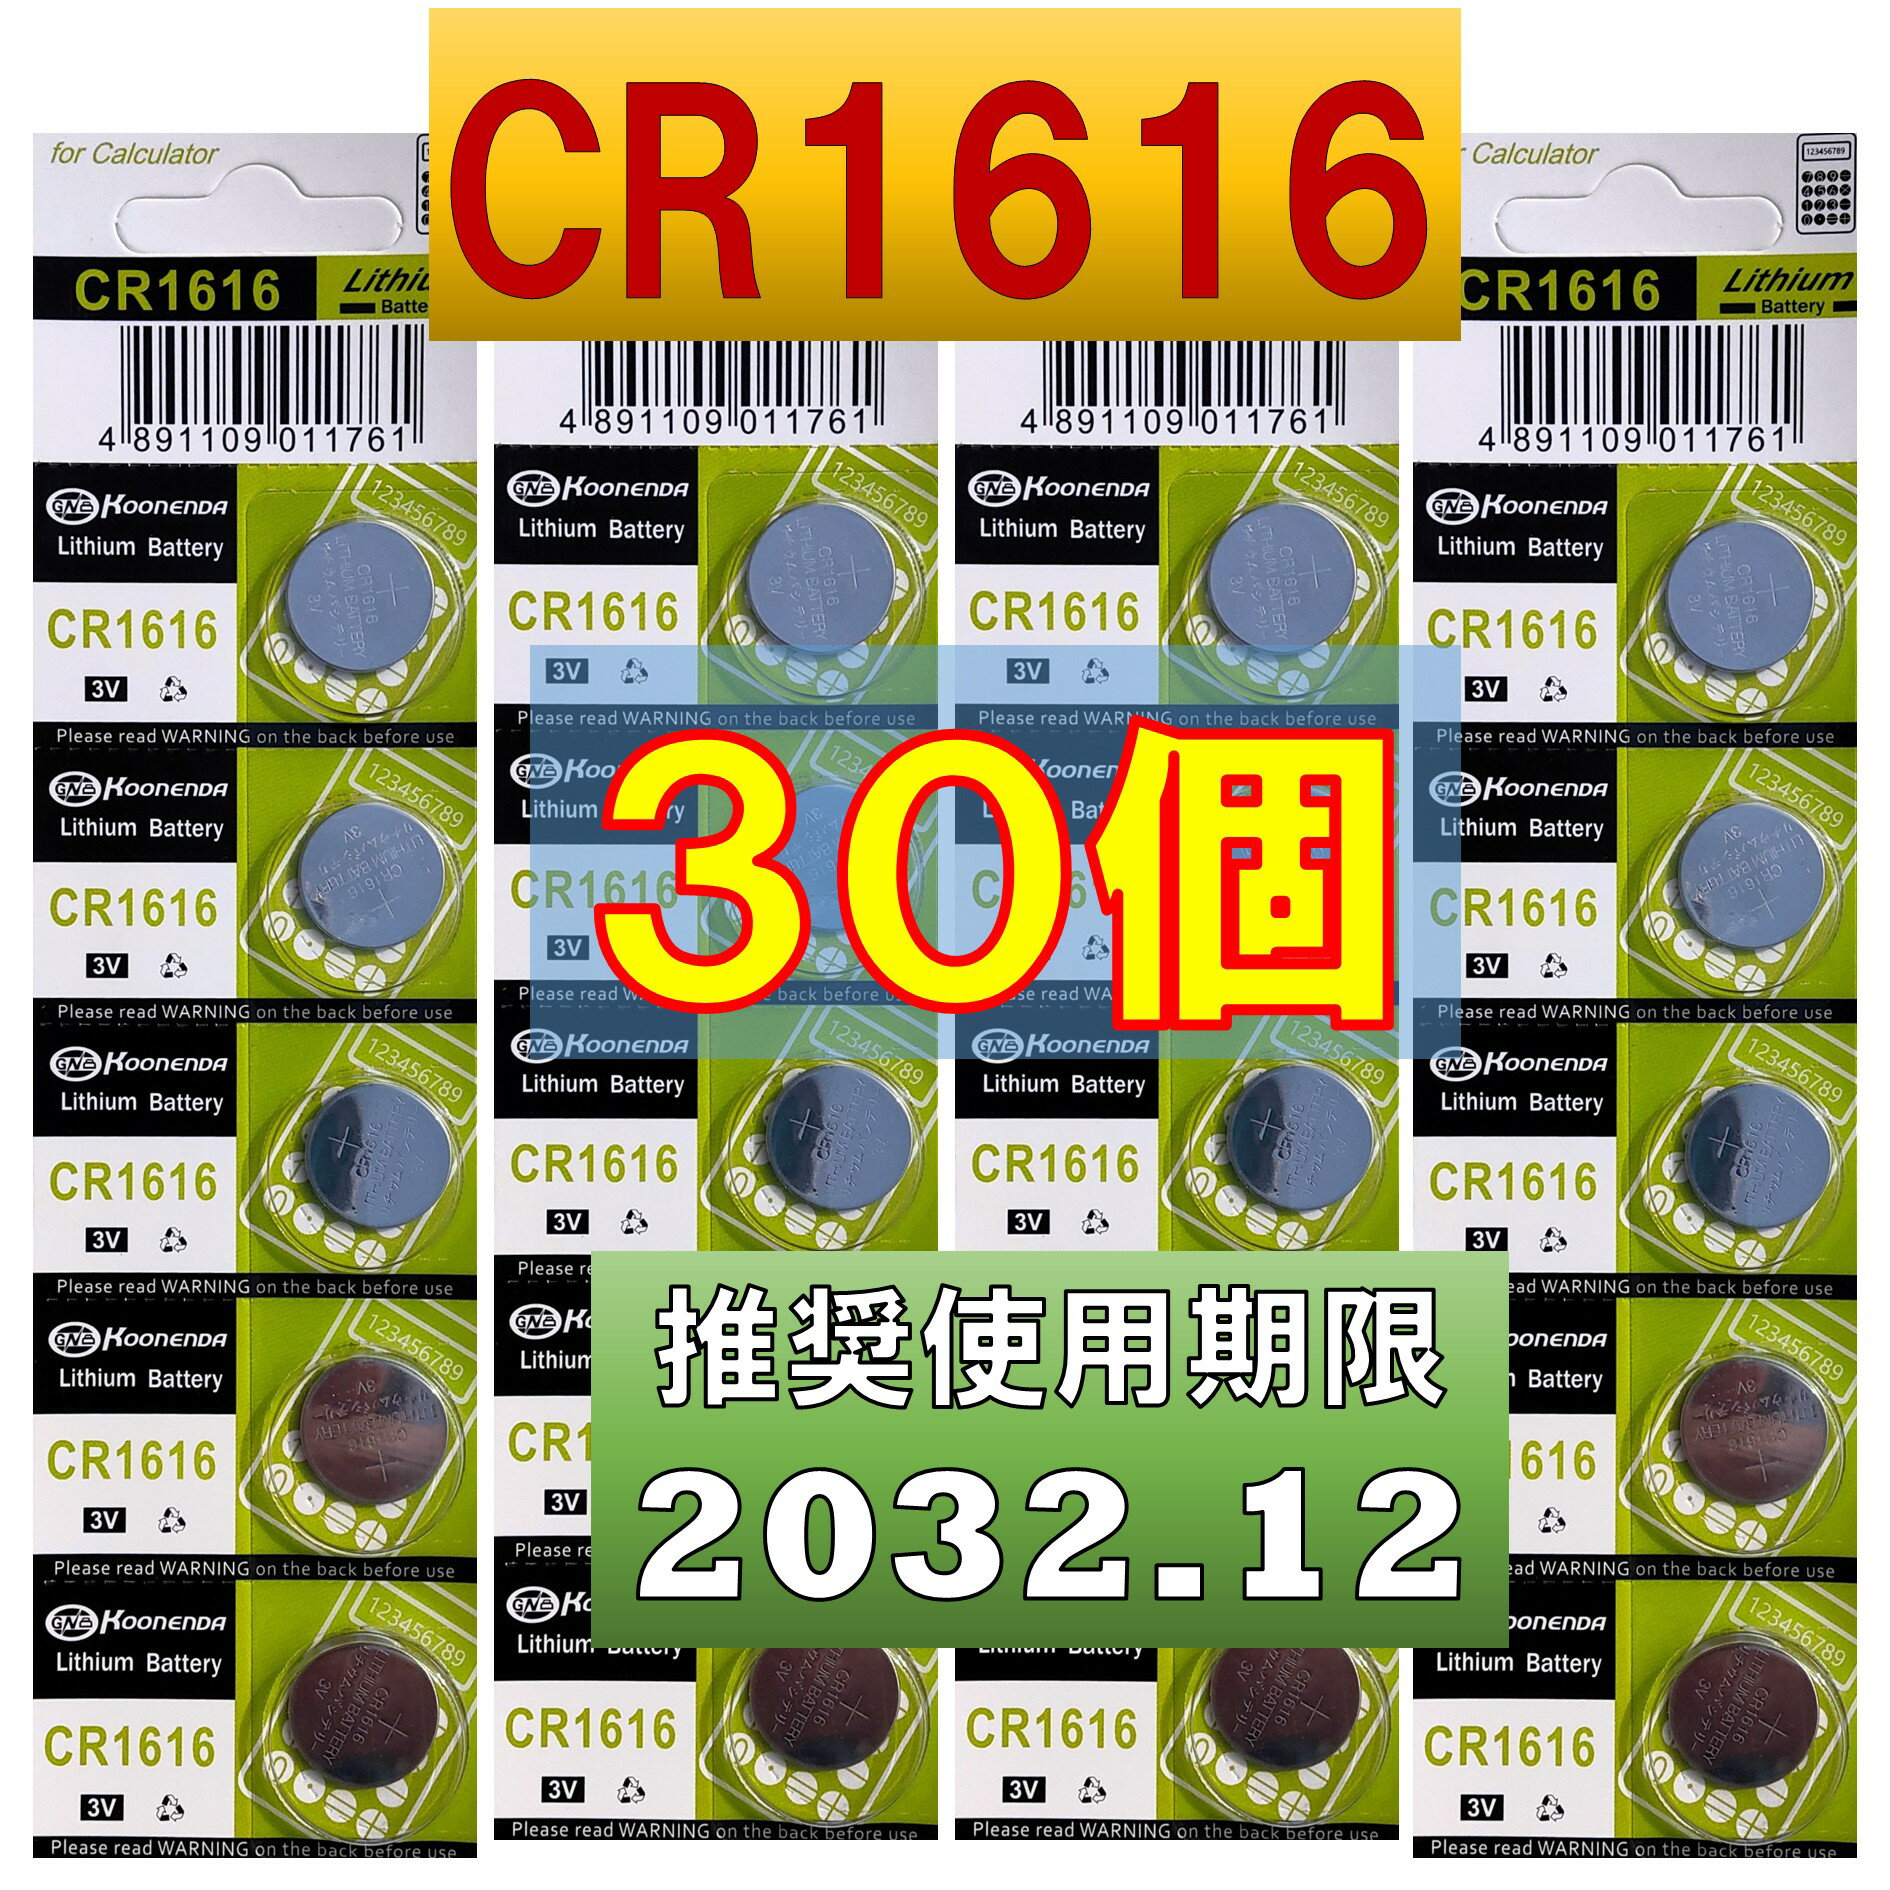 CR1616 `E{^dr 30 gp 2032N12